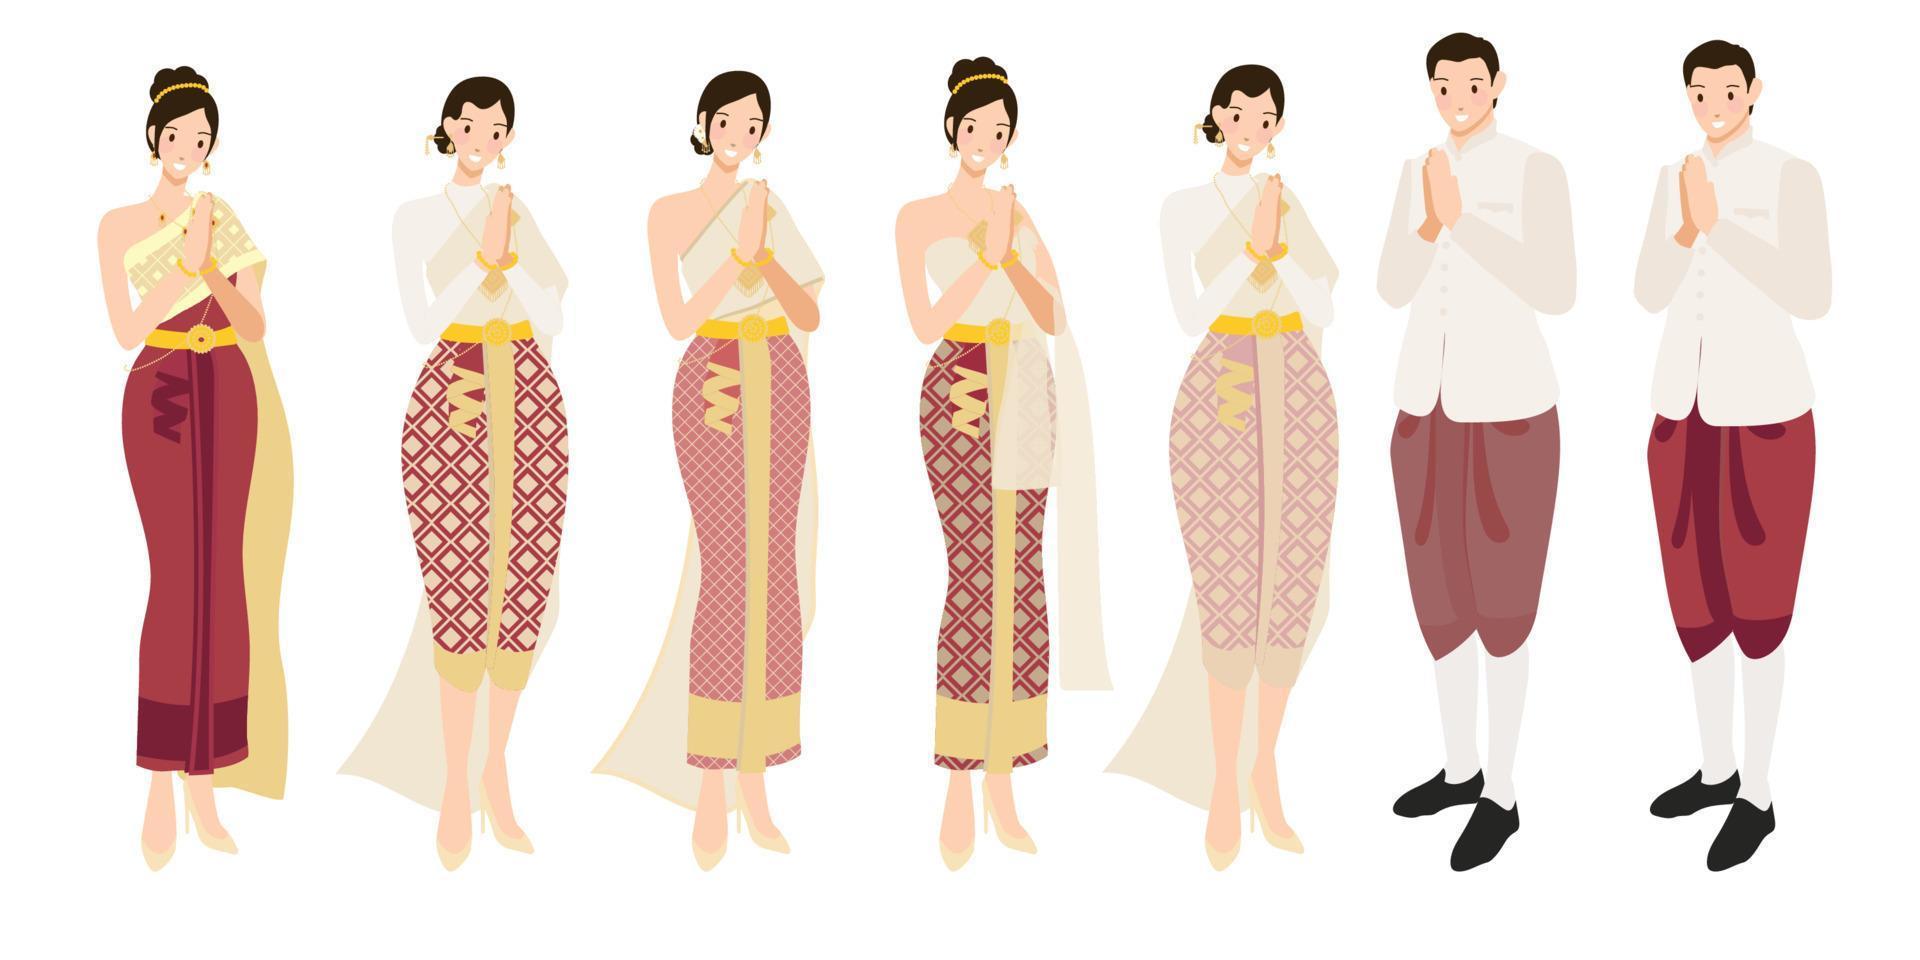 casal de noivos tailandeses cumprimentando sawasdee em ilustração de vetores eps10 de vestido tradicional